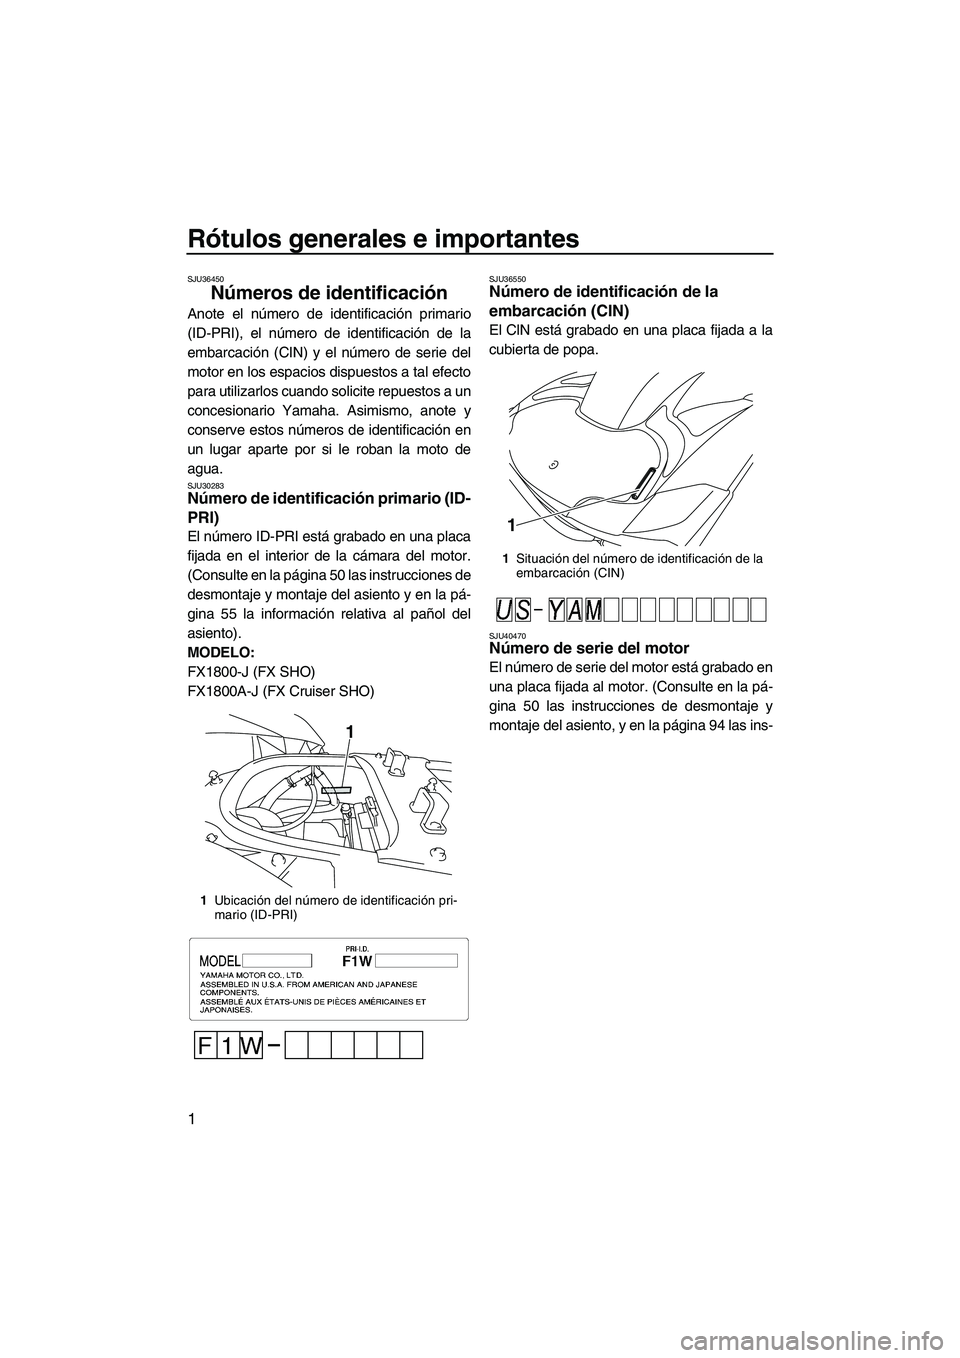 YAMAHA FX SHO 2010  Manuale de Empleo (in Spanish) Rótulos generales e importantes
1
SJU36450
Números de identificación 
Anote el número de identificación primario
(ID-PRI), el número de identificación de la
embarcación (CIN) y el número de s